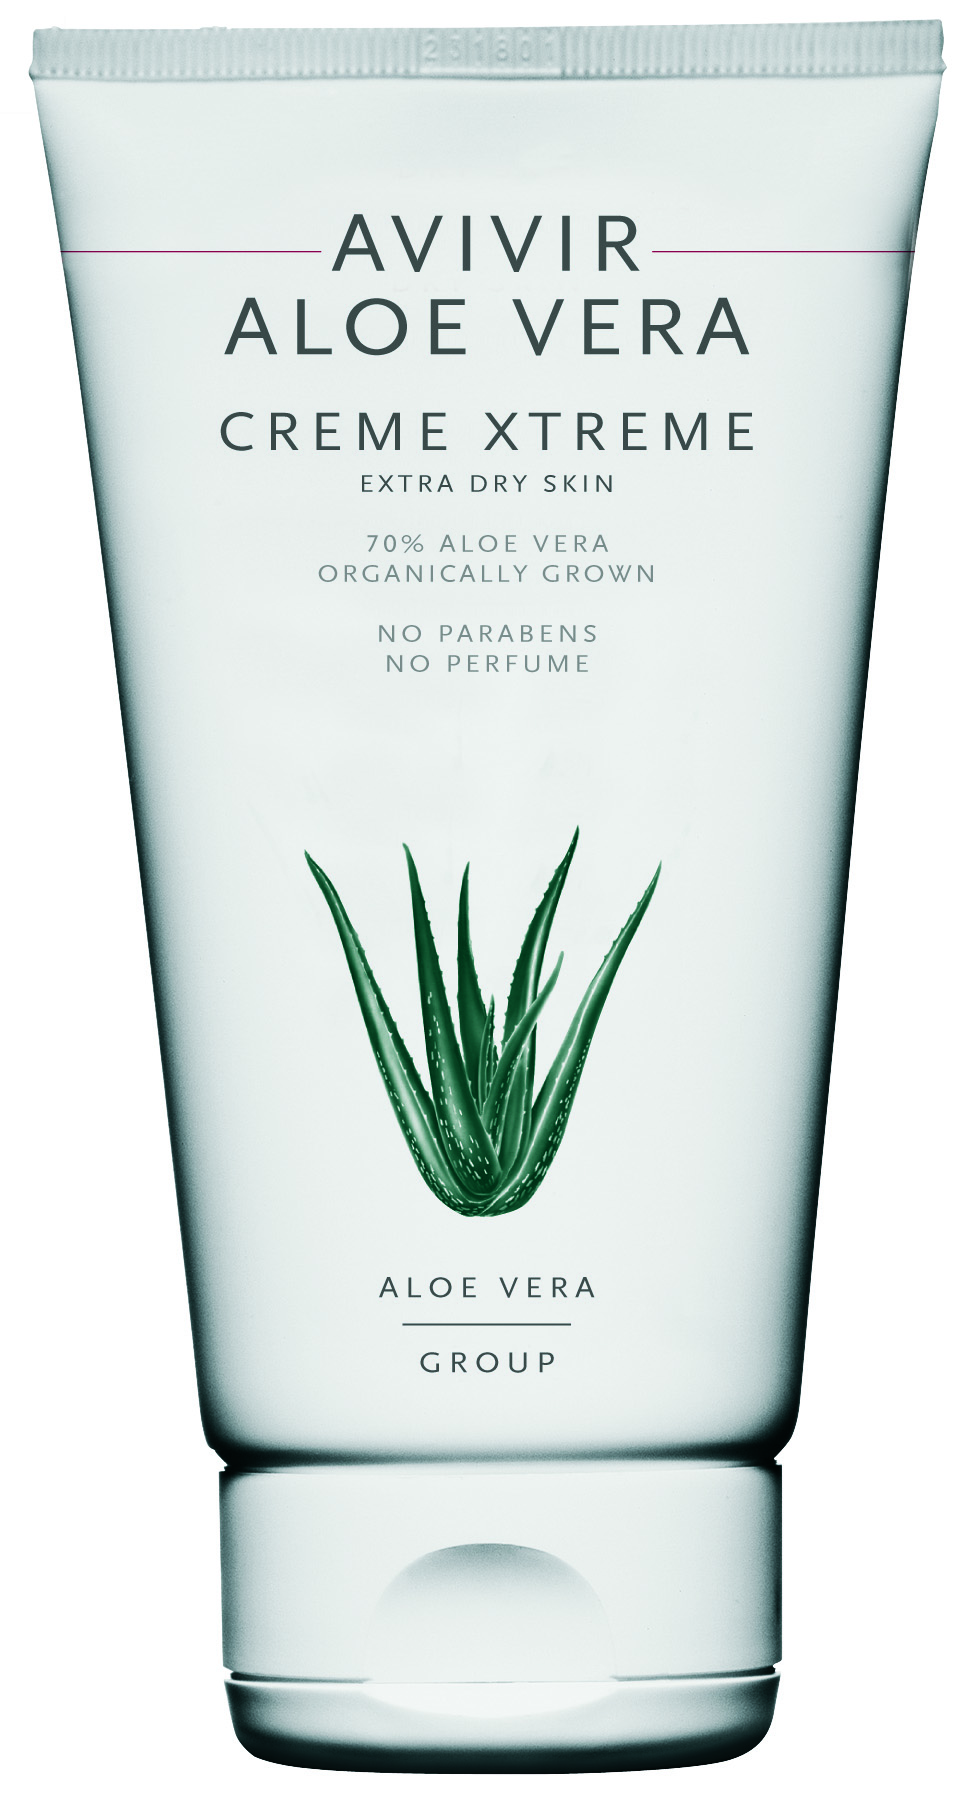 AVIVIR Aloe Vera Creme Xtreme 150ml